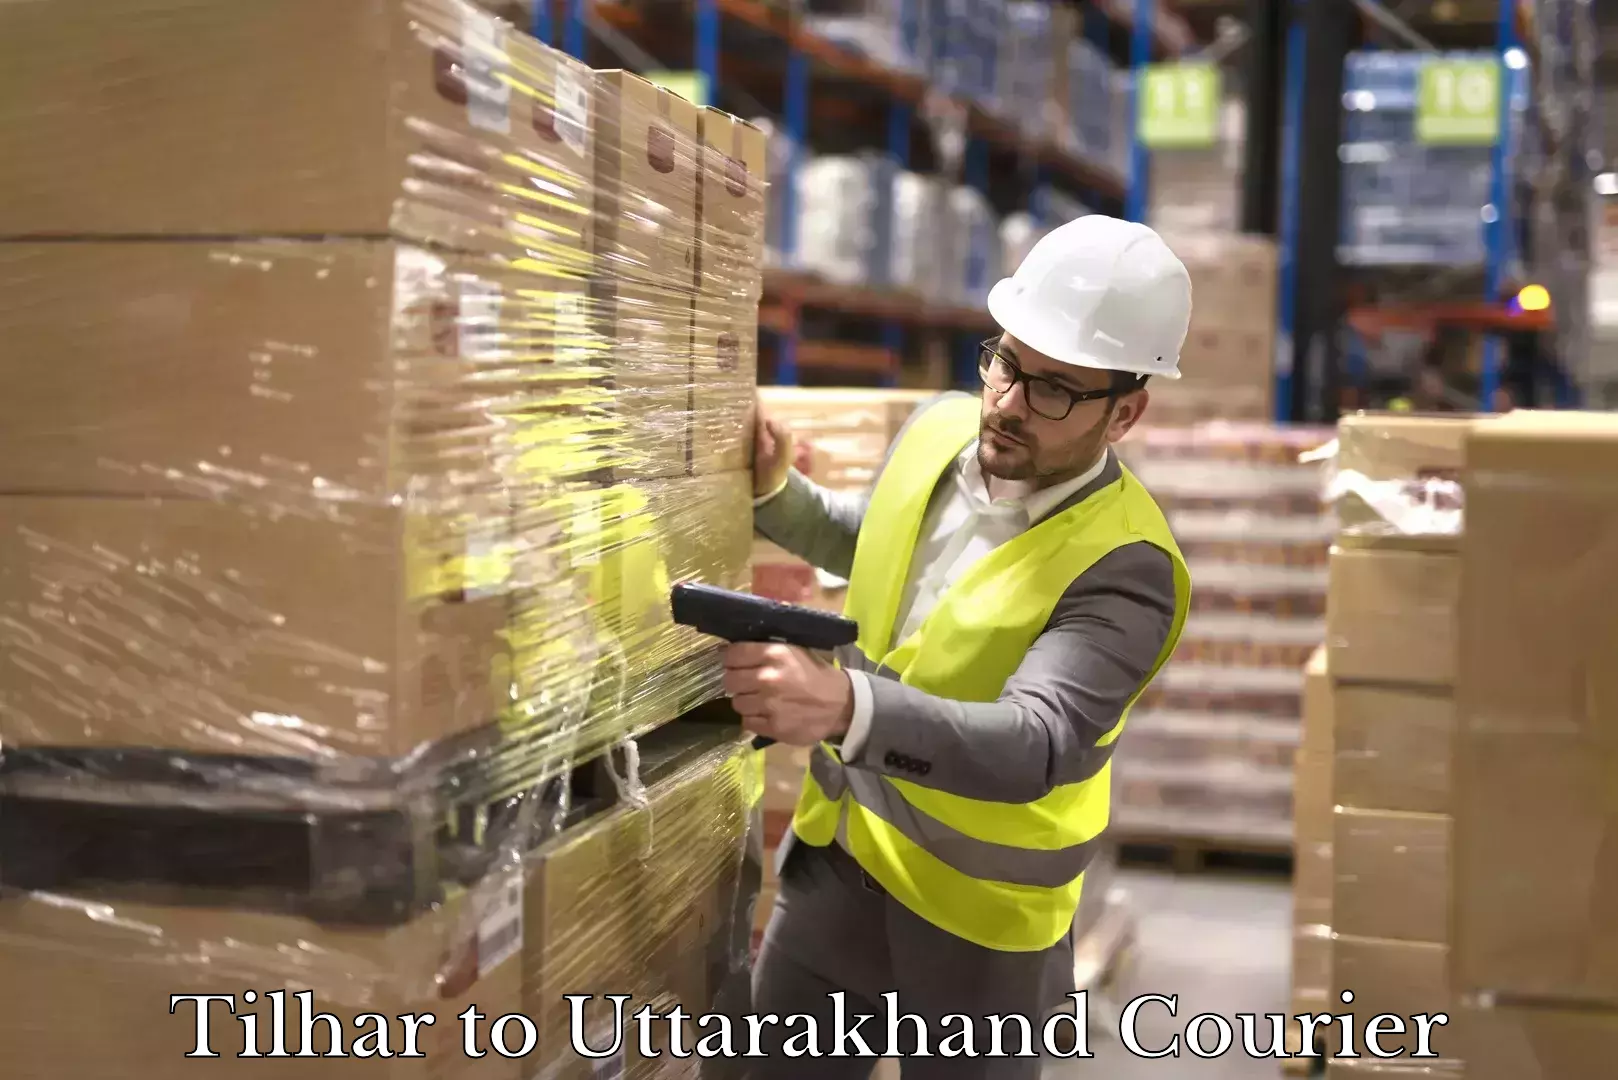 Local delivery service Tilhar to Uttarakhand